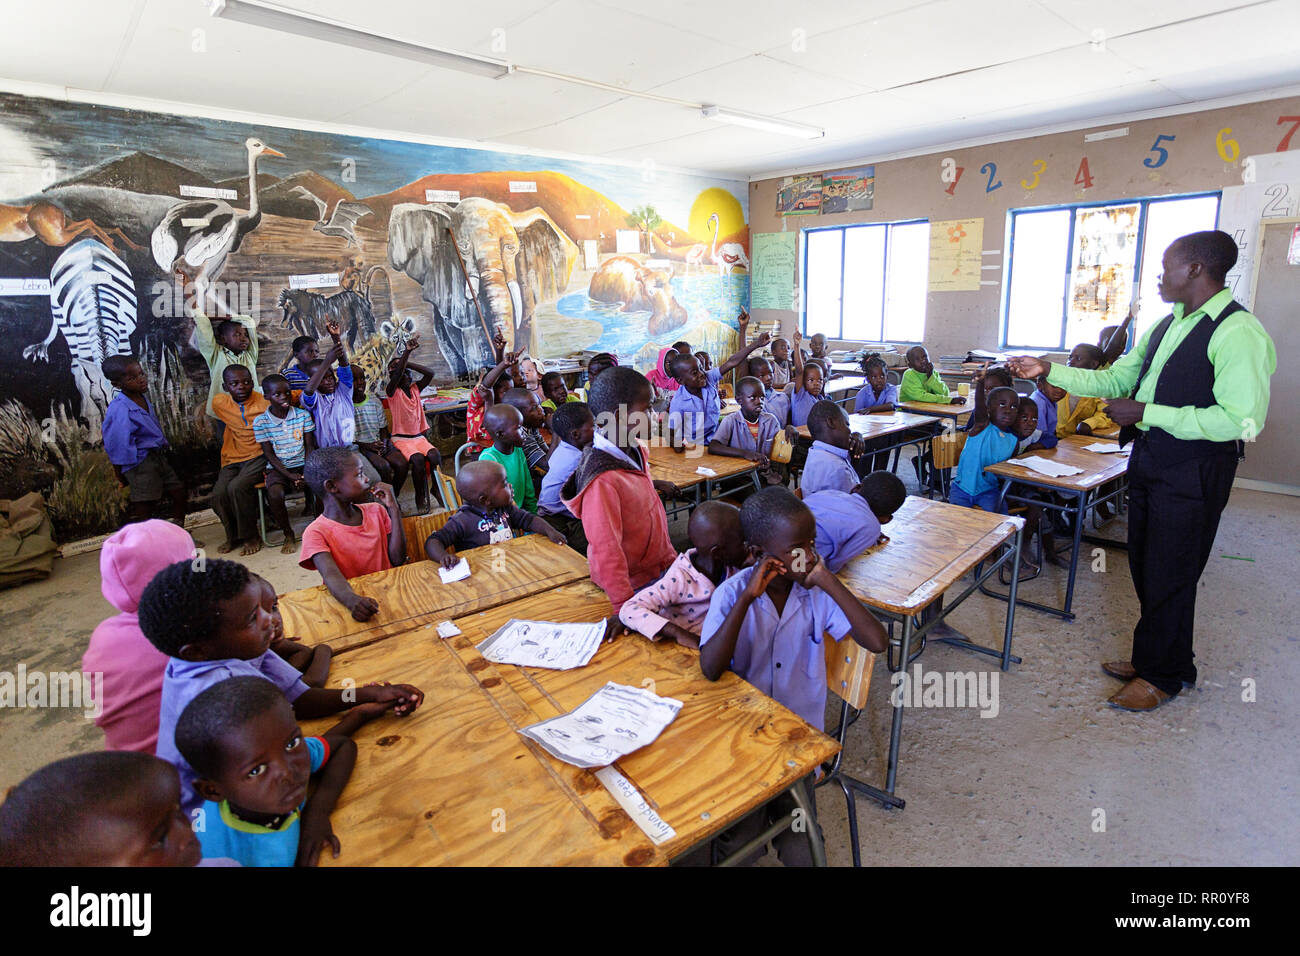 Les enfants dans une classe bondée dans une école de village, Namibie, Purros. Banque D'Images